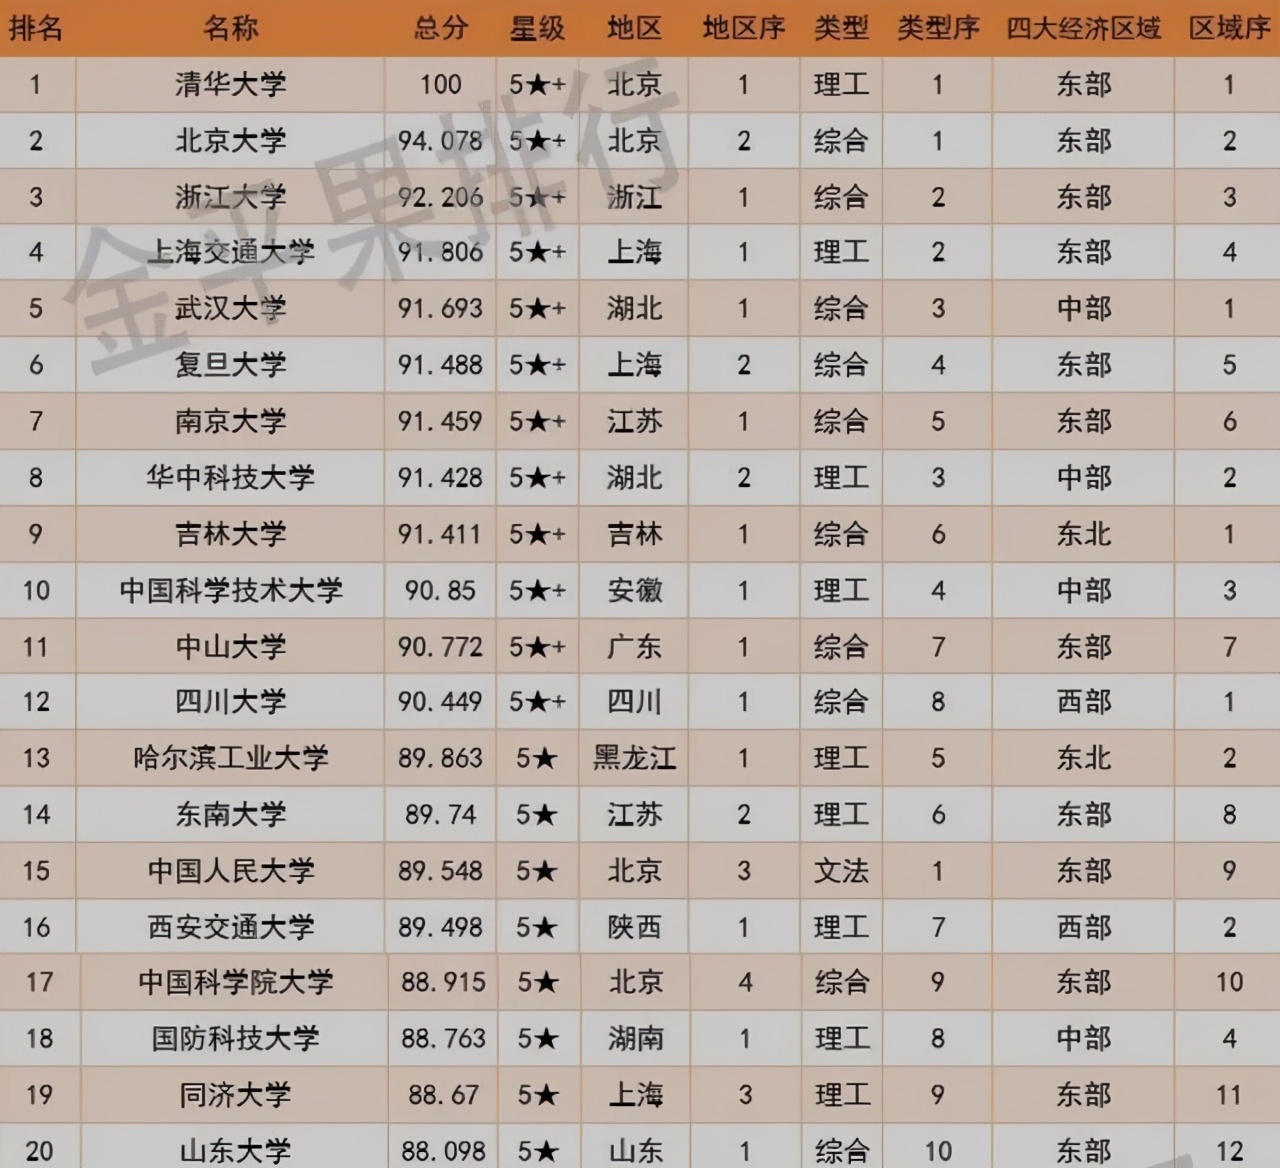 中国排名前二十位的大学 中国前二十名大学排名榜